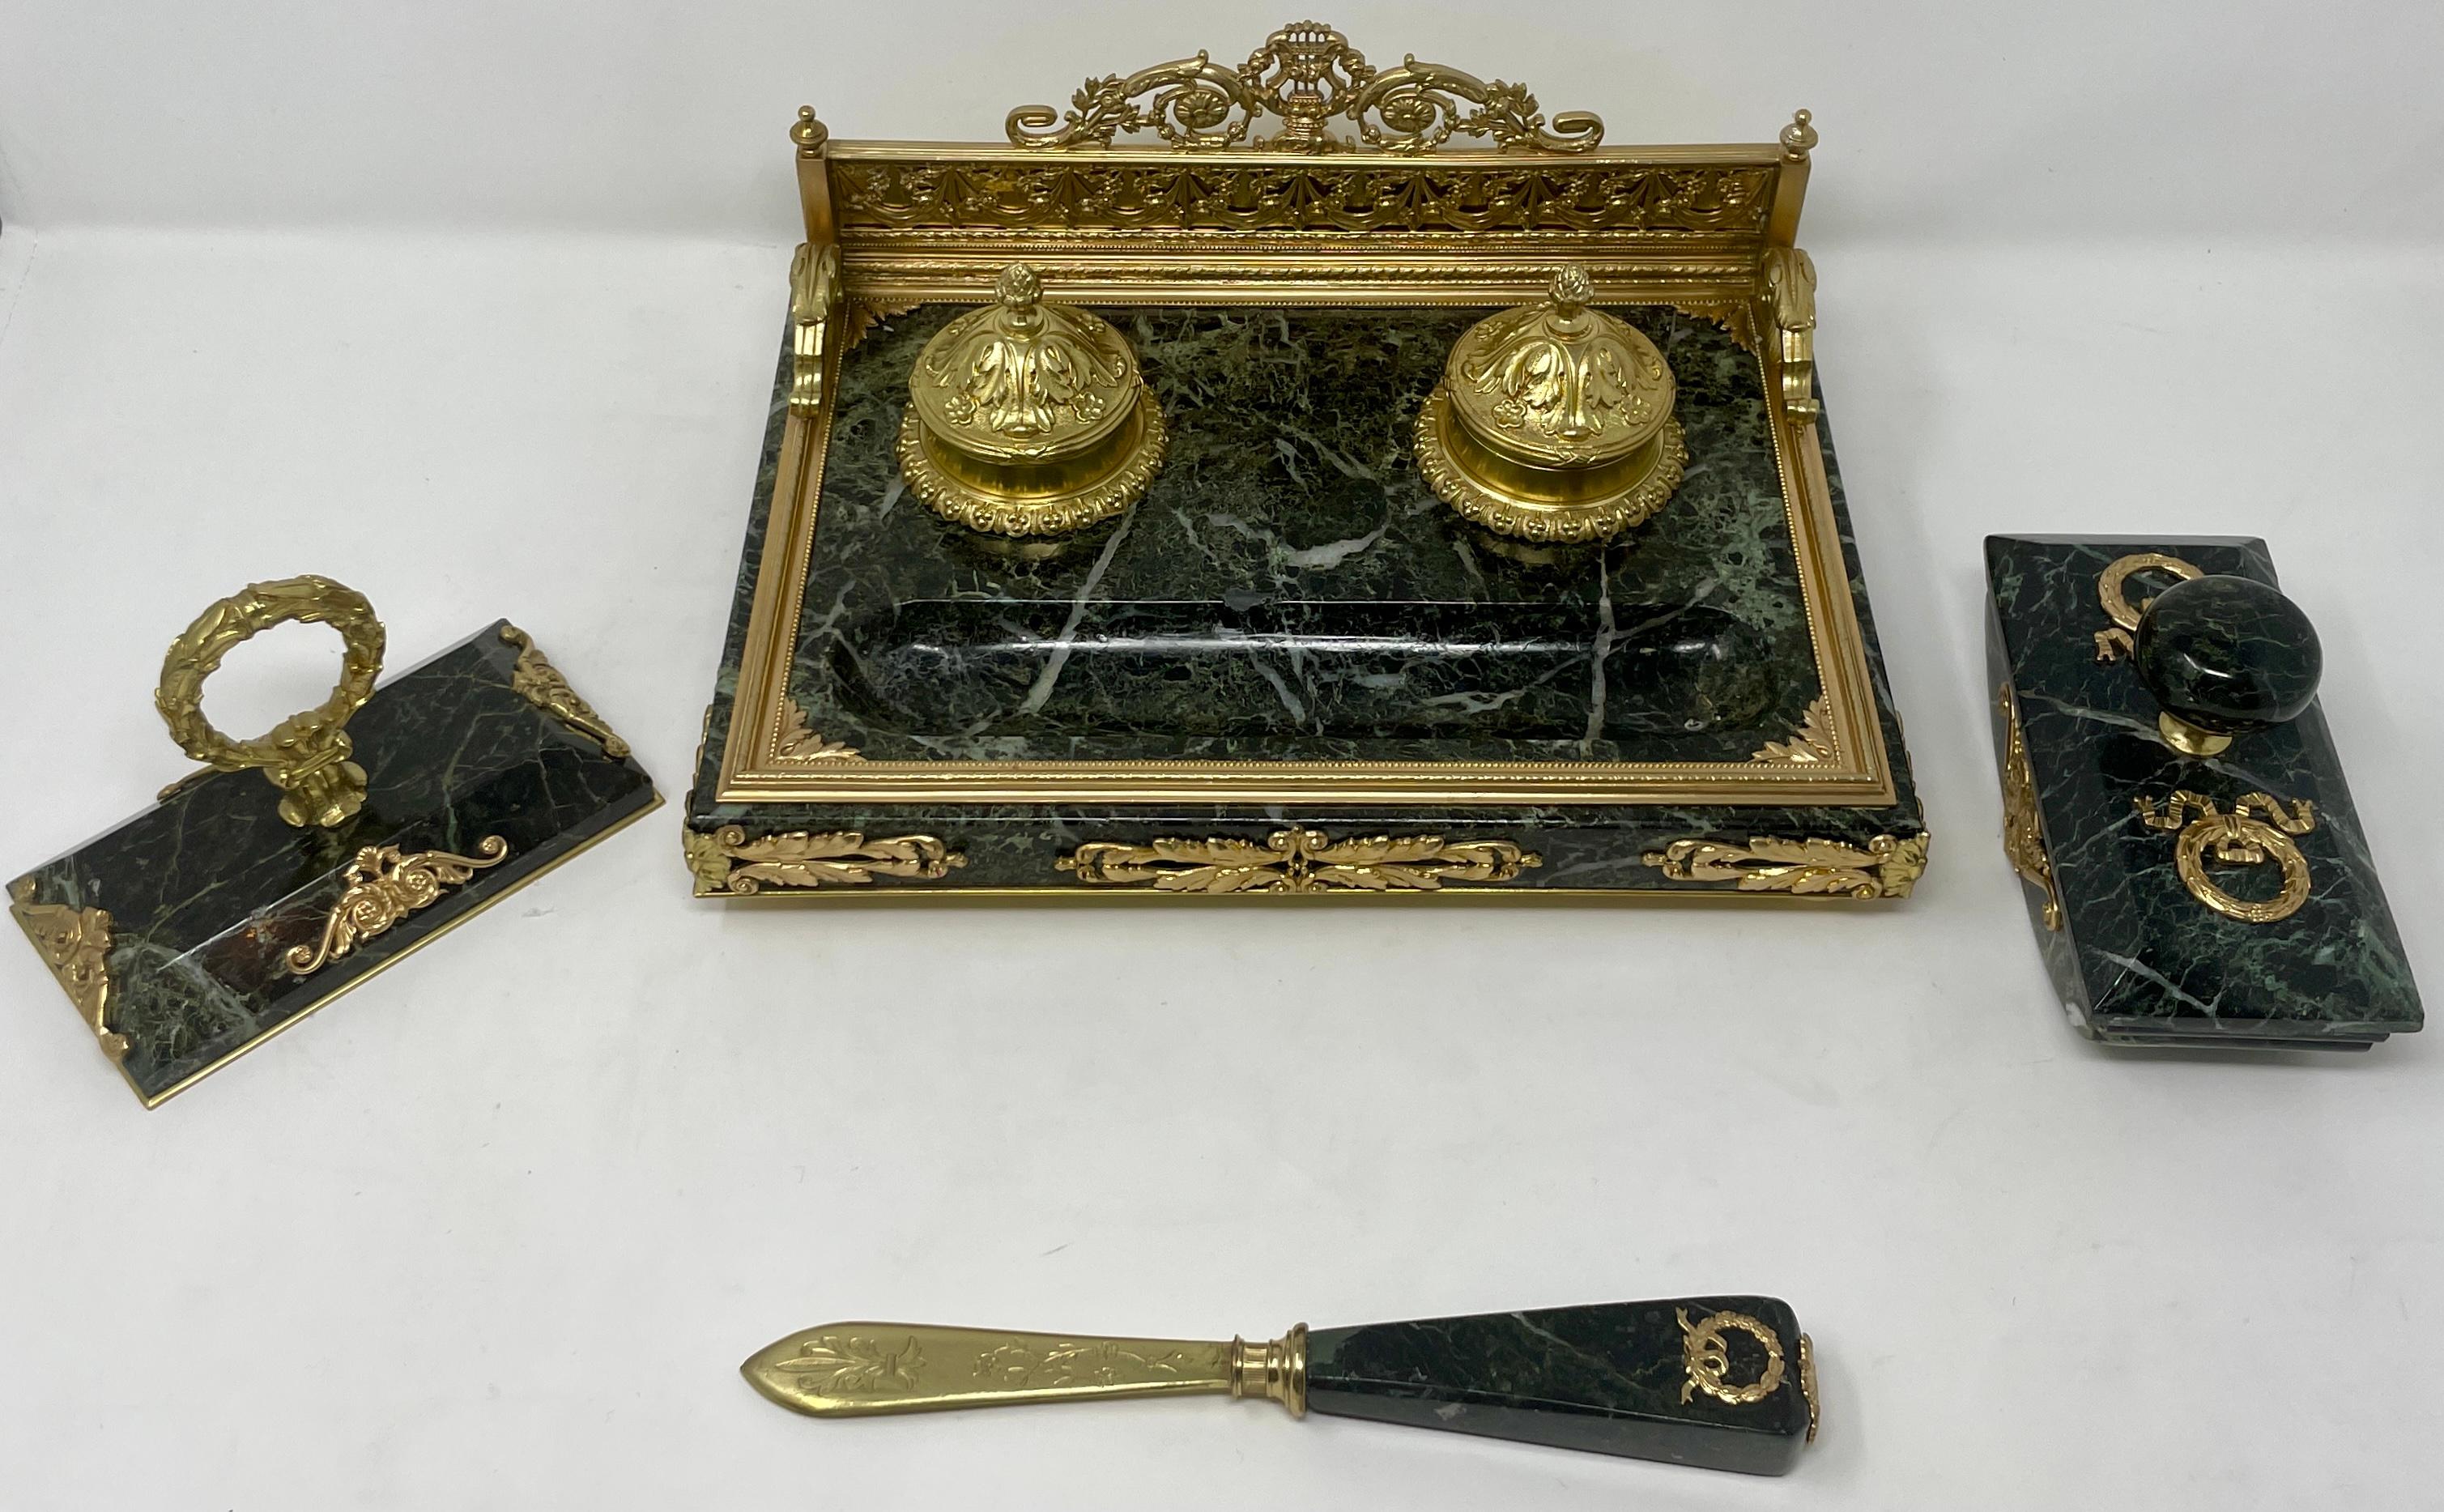 Außergewöhnliche antike Französisch grünem Marmor und Goldbronze 4 Stück Tintenfass Schreibtisch-Set, circa 1875-1885.
Enthält:
Tintenfass: 11B x 8L x 4,75H
Briefbeschwerer (links): 3B x 5,25L x 3,5H
Rolle Stempel (rechts): 2,75 B x 5,75 L x